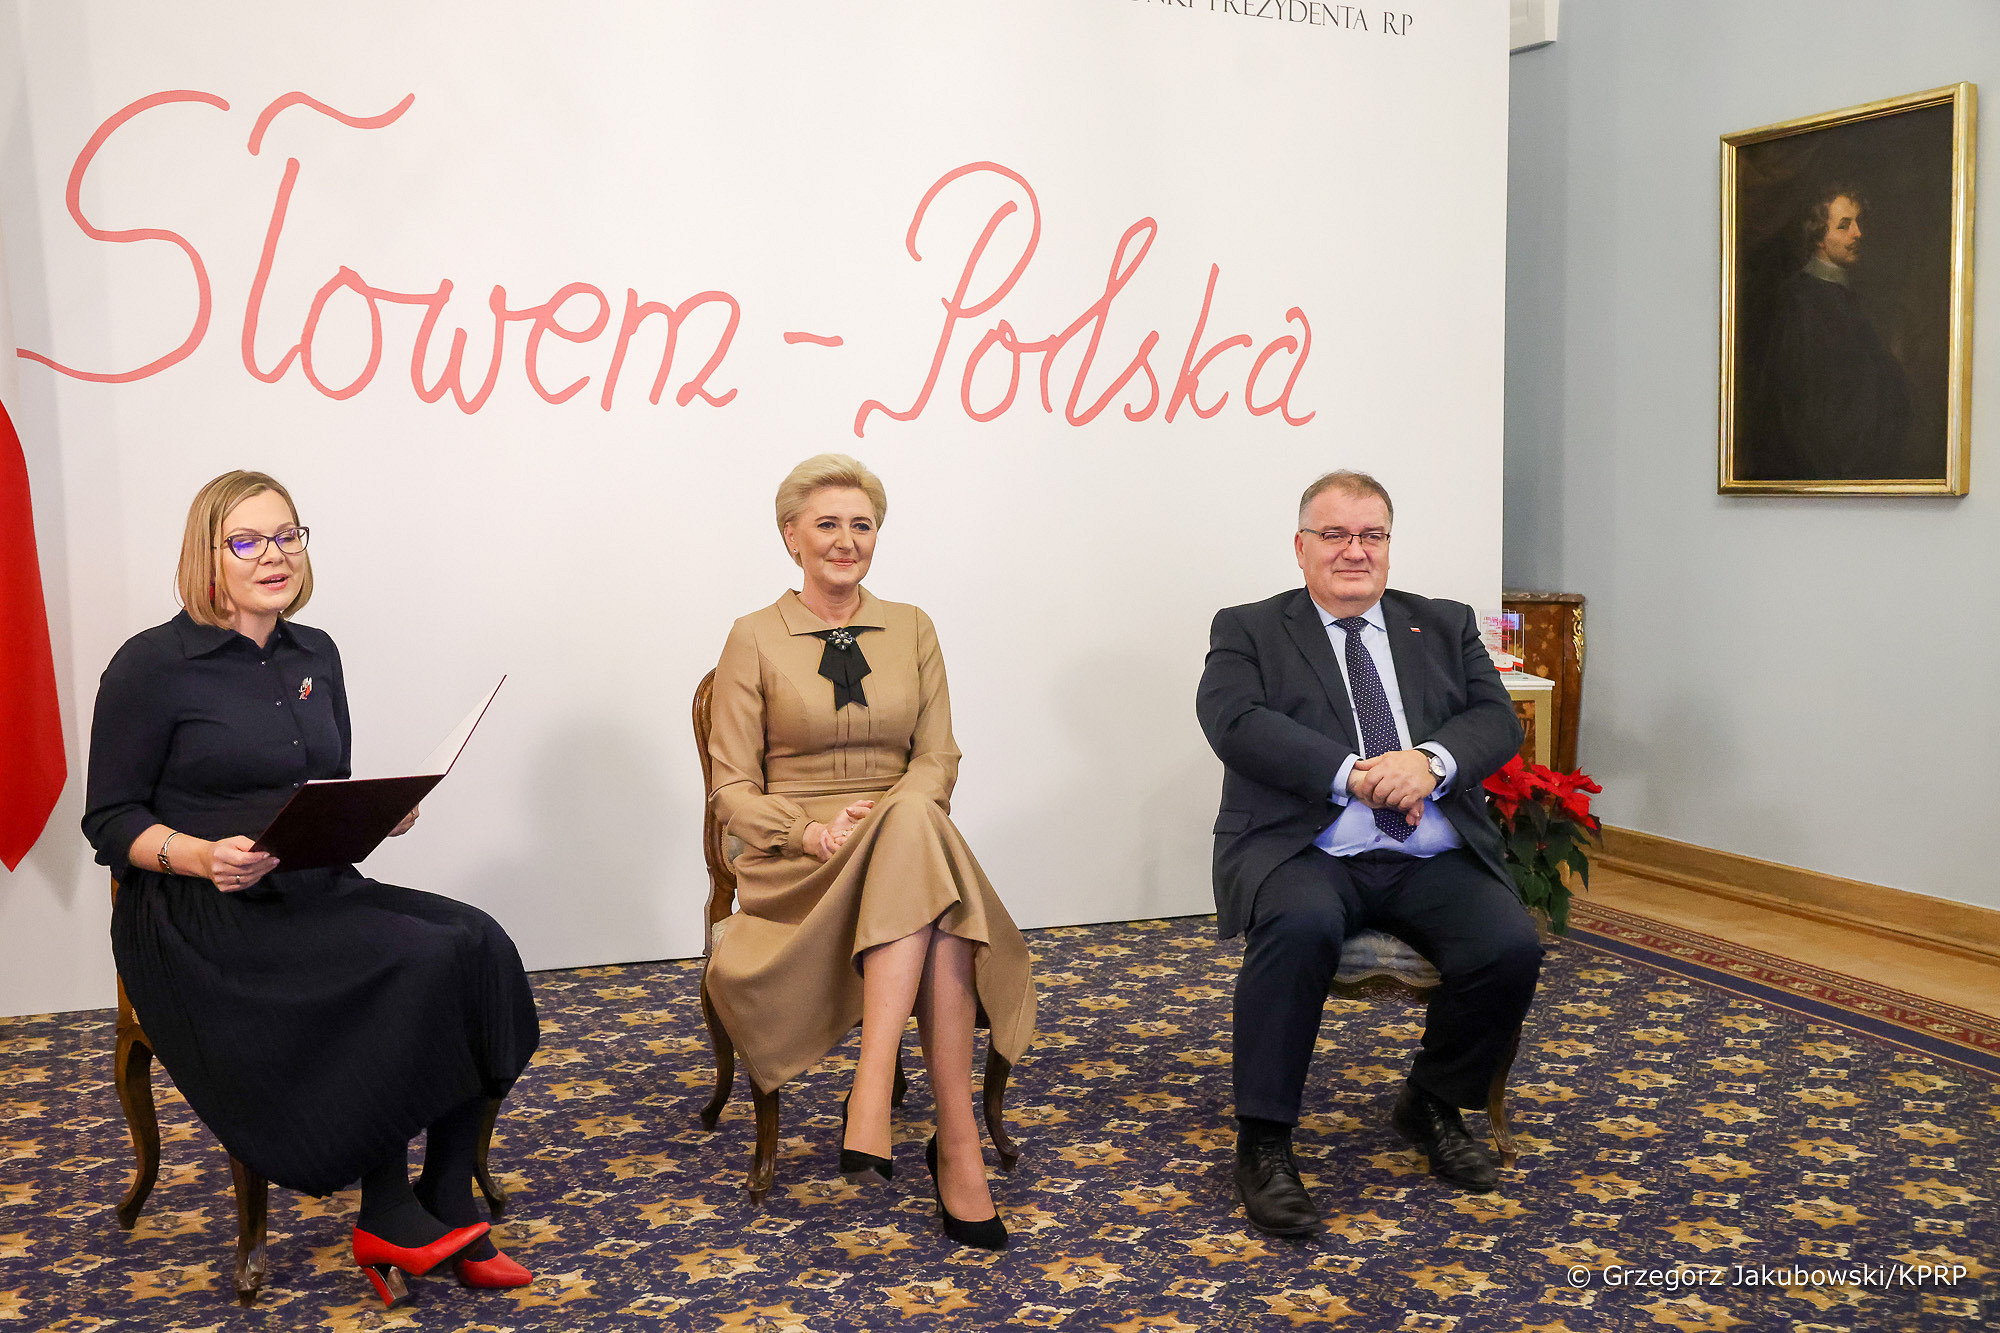 II edycja Konkursu „Słowem-Polska” rozstrzygnięta